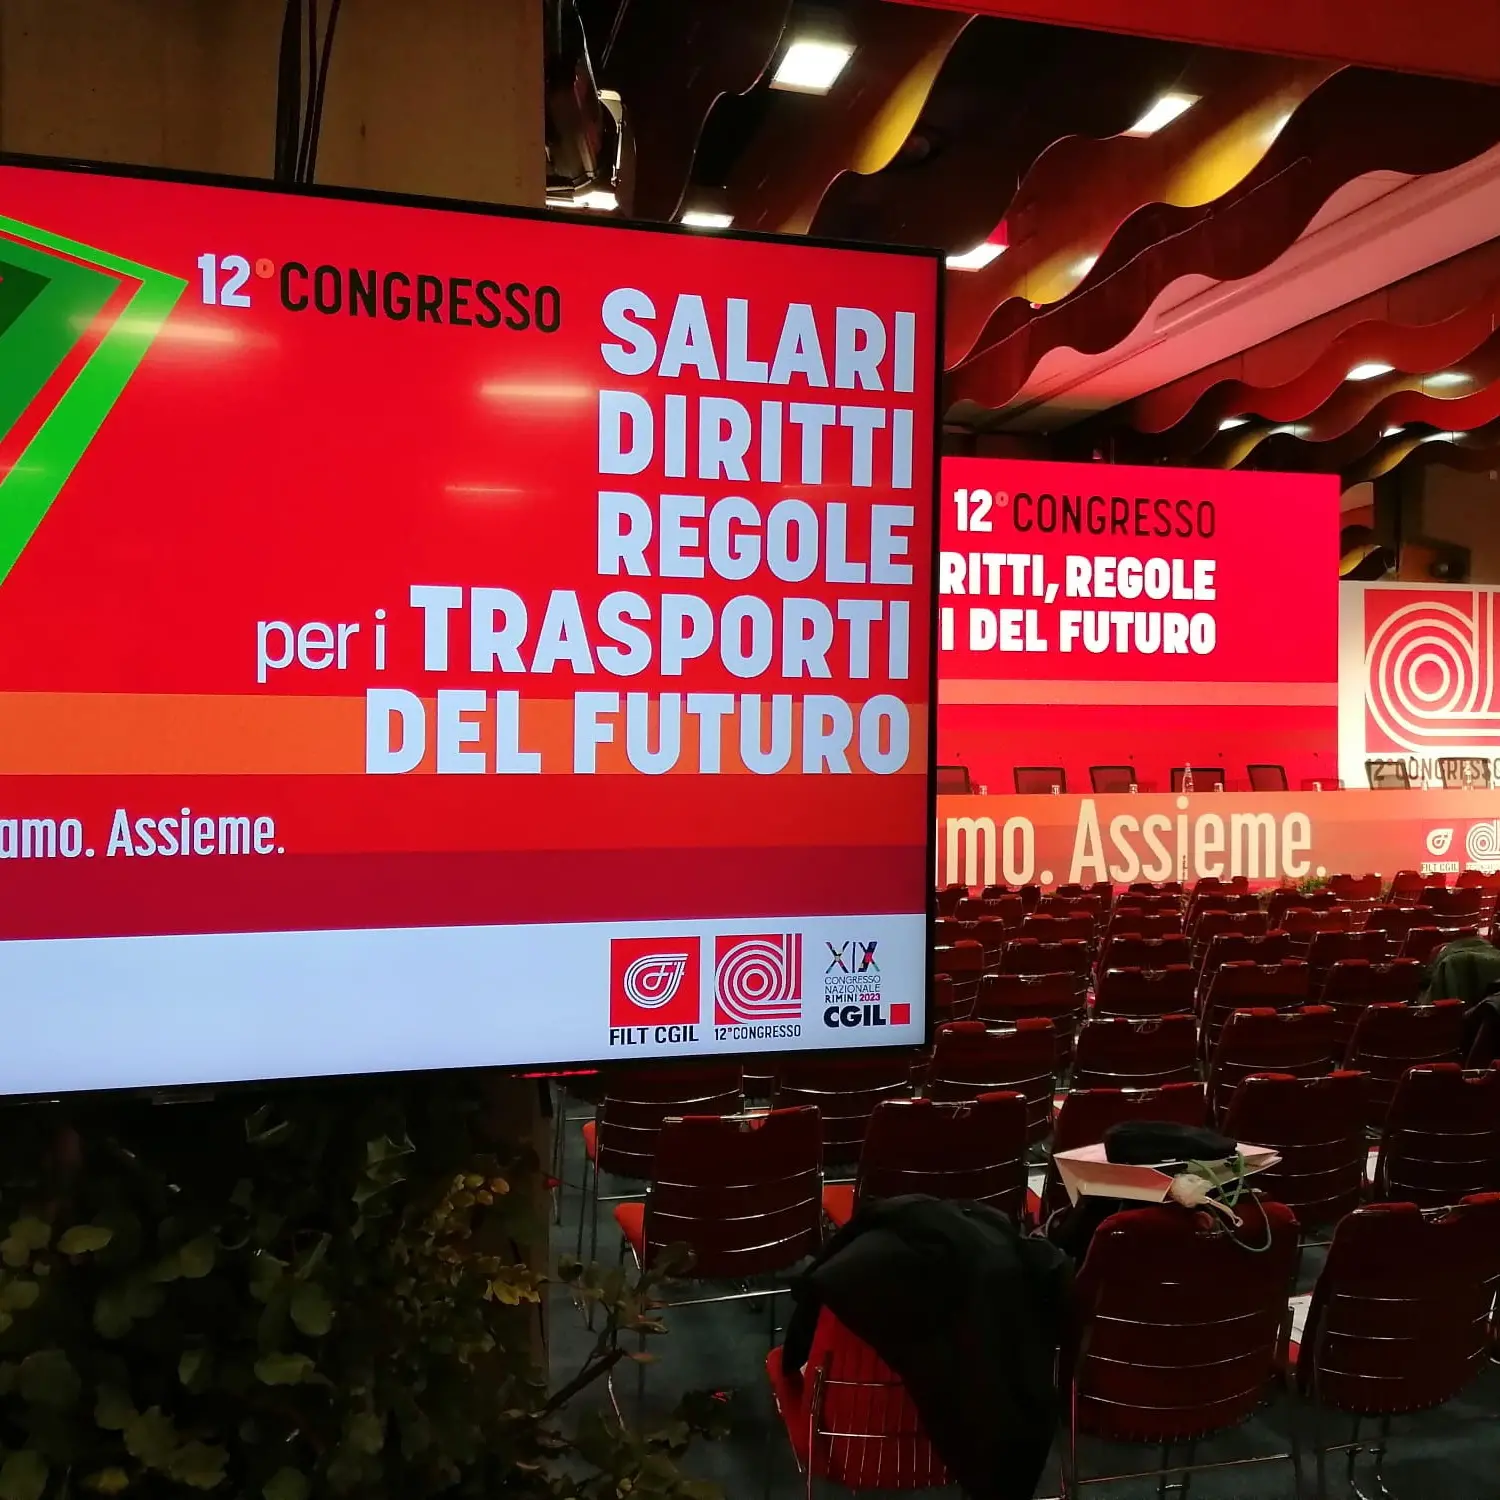 Salari, diritti, regole per i trasporti del futuro. A Catania il Congresso della Filt Cgil